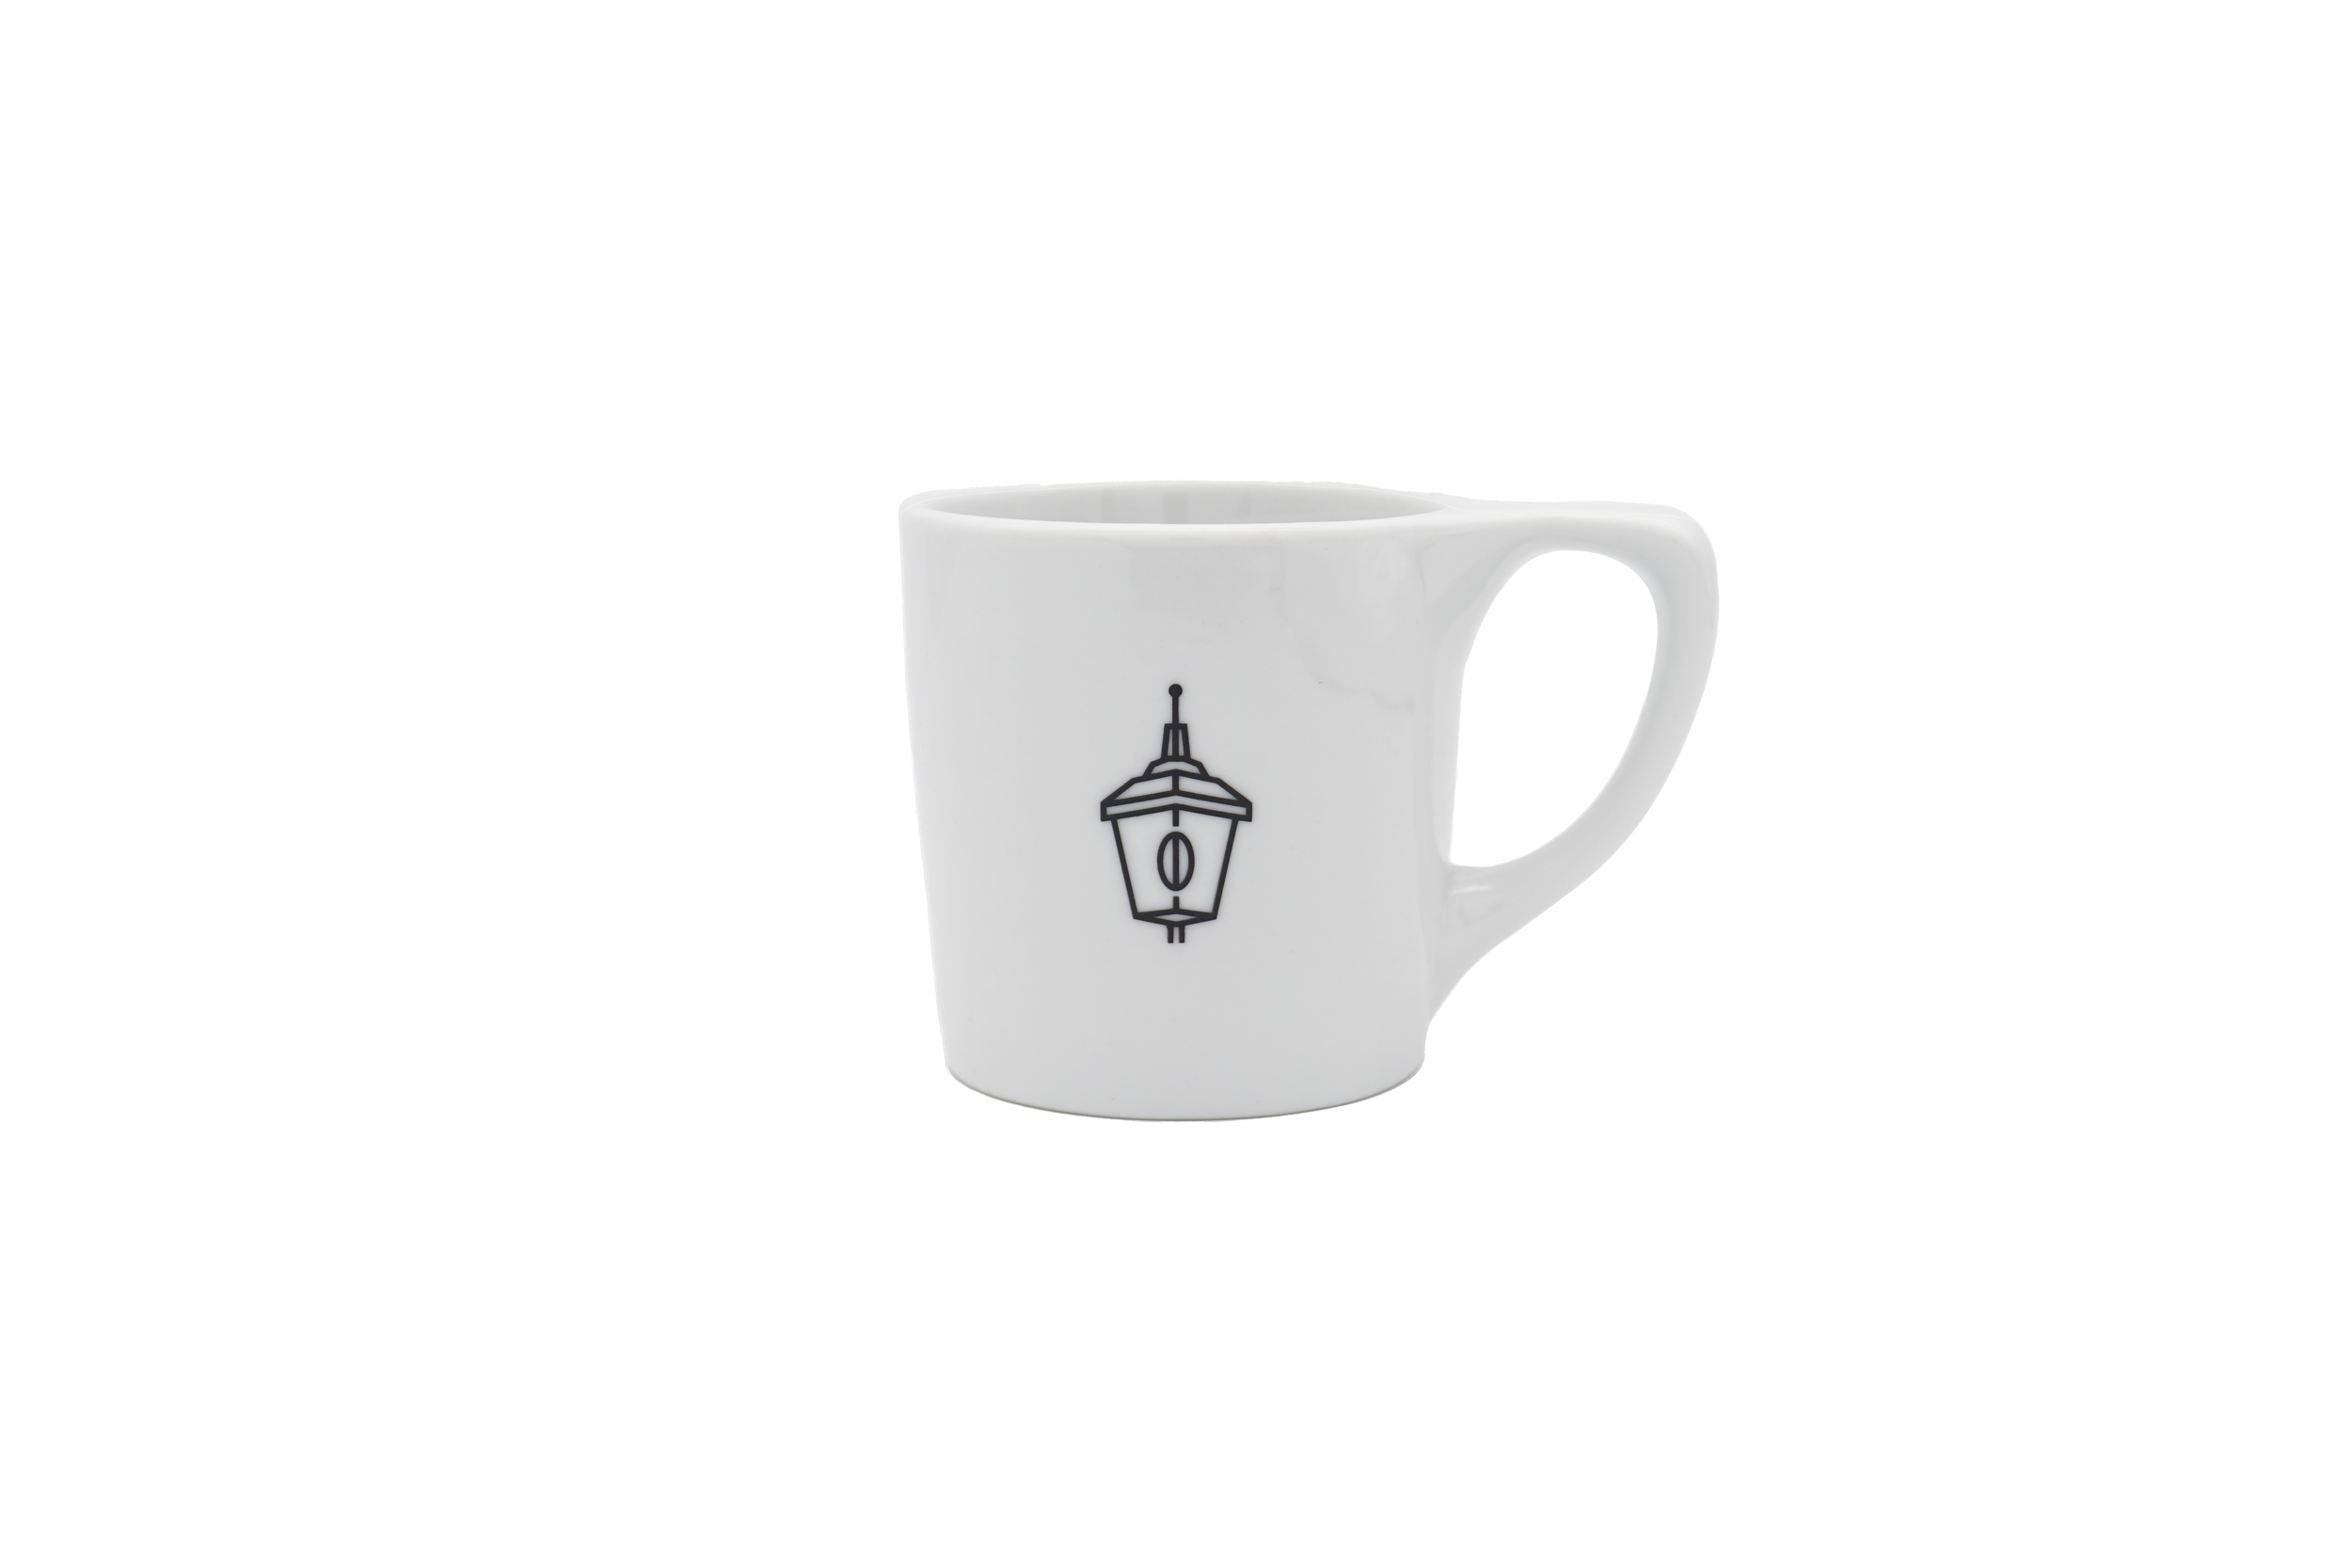 10oz Lino Mug - NotNeutral — Lone Light Coffee